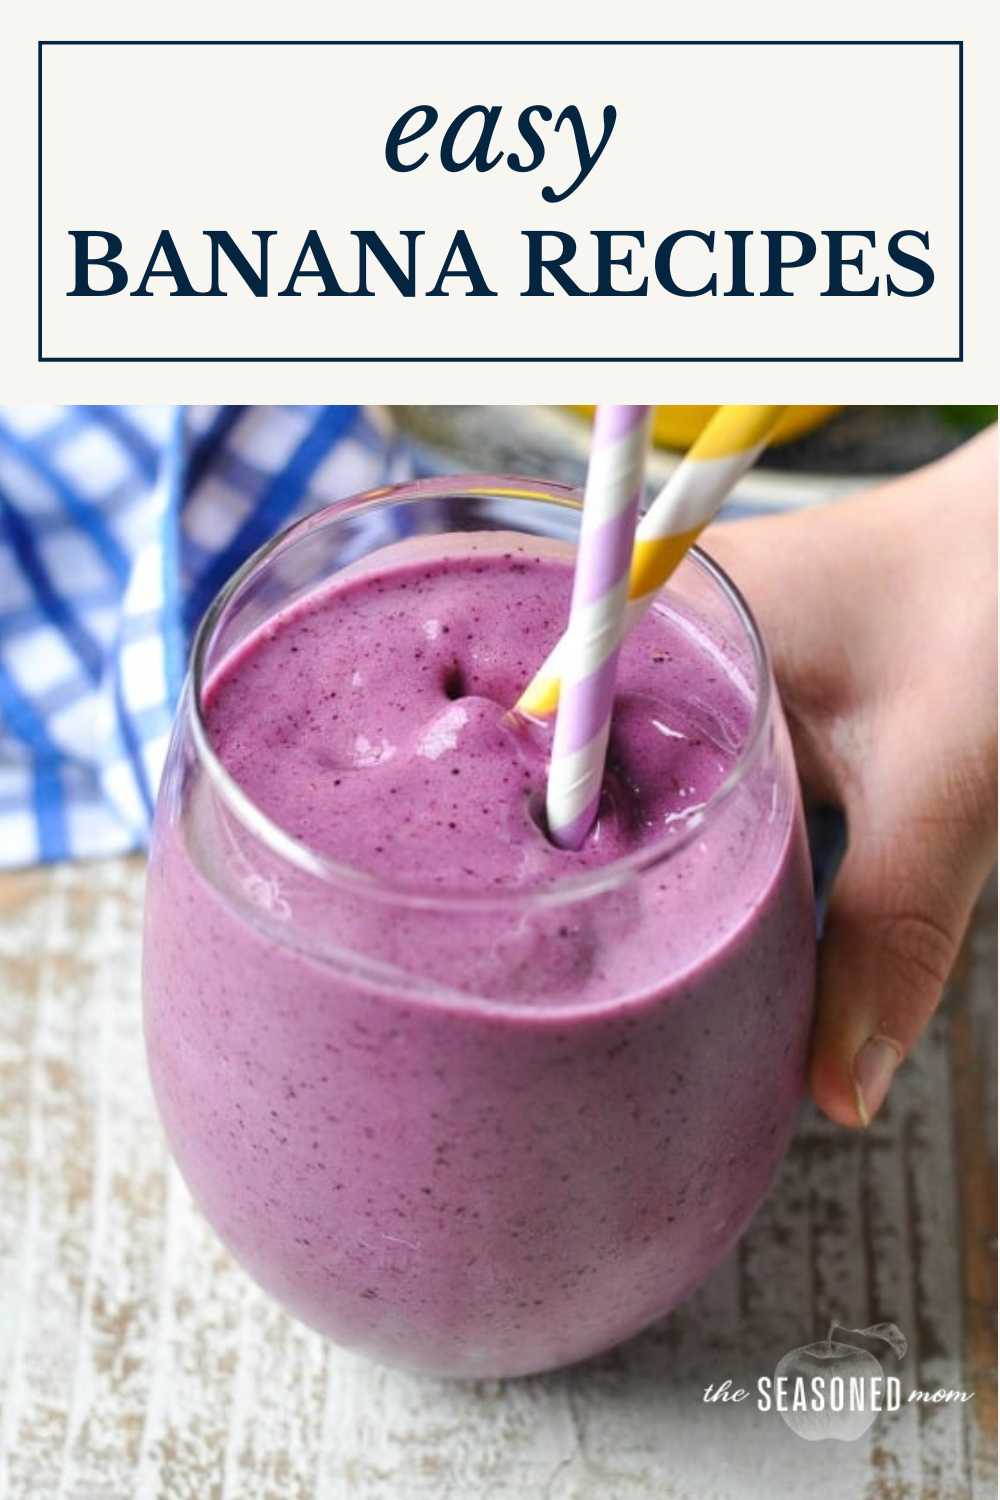 Easy Banana Recipes - The Seasoned Mom